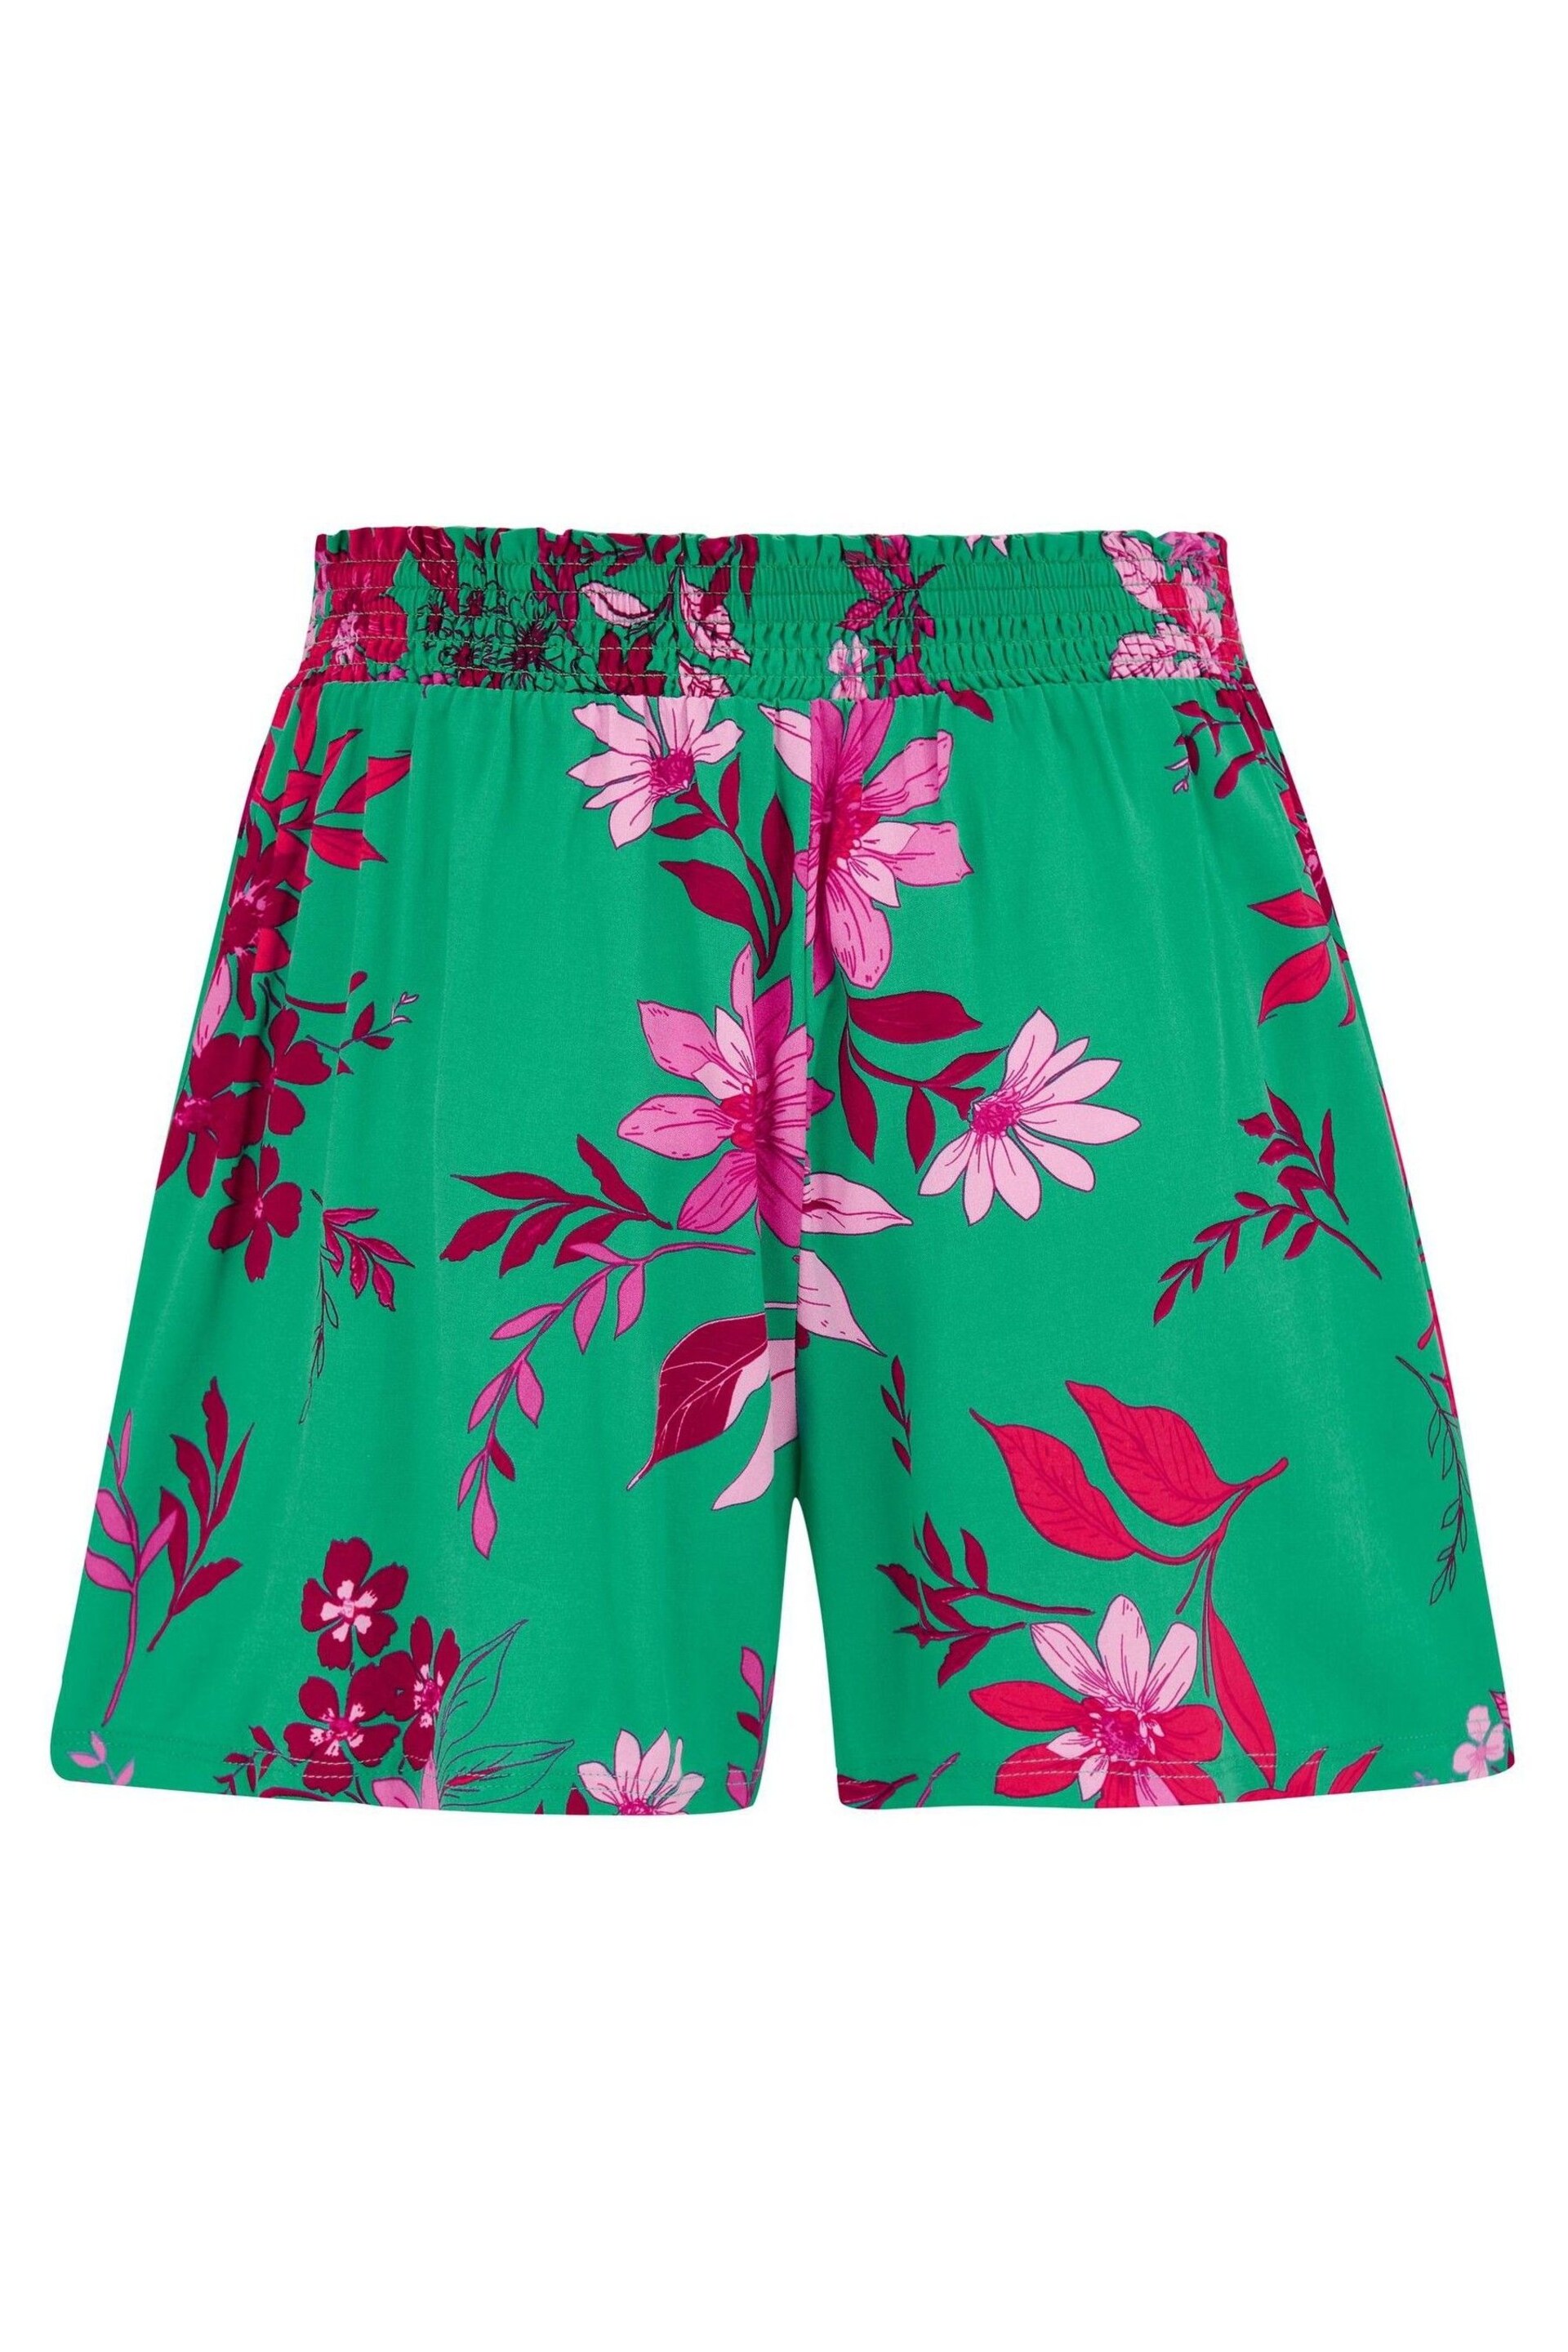 Pour Moi Green LENZING™ ECOVERO™ Viscose Beach Shorts - Image 4 of 4